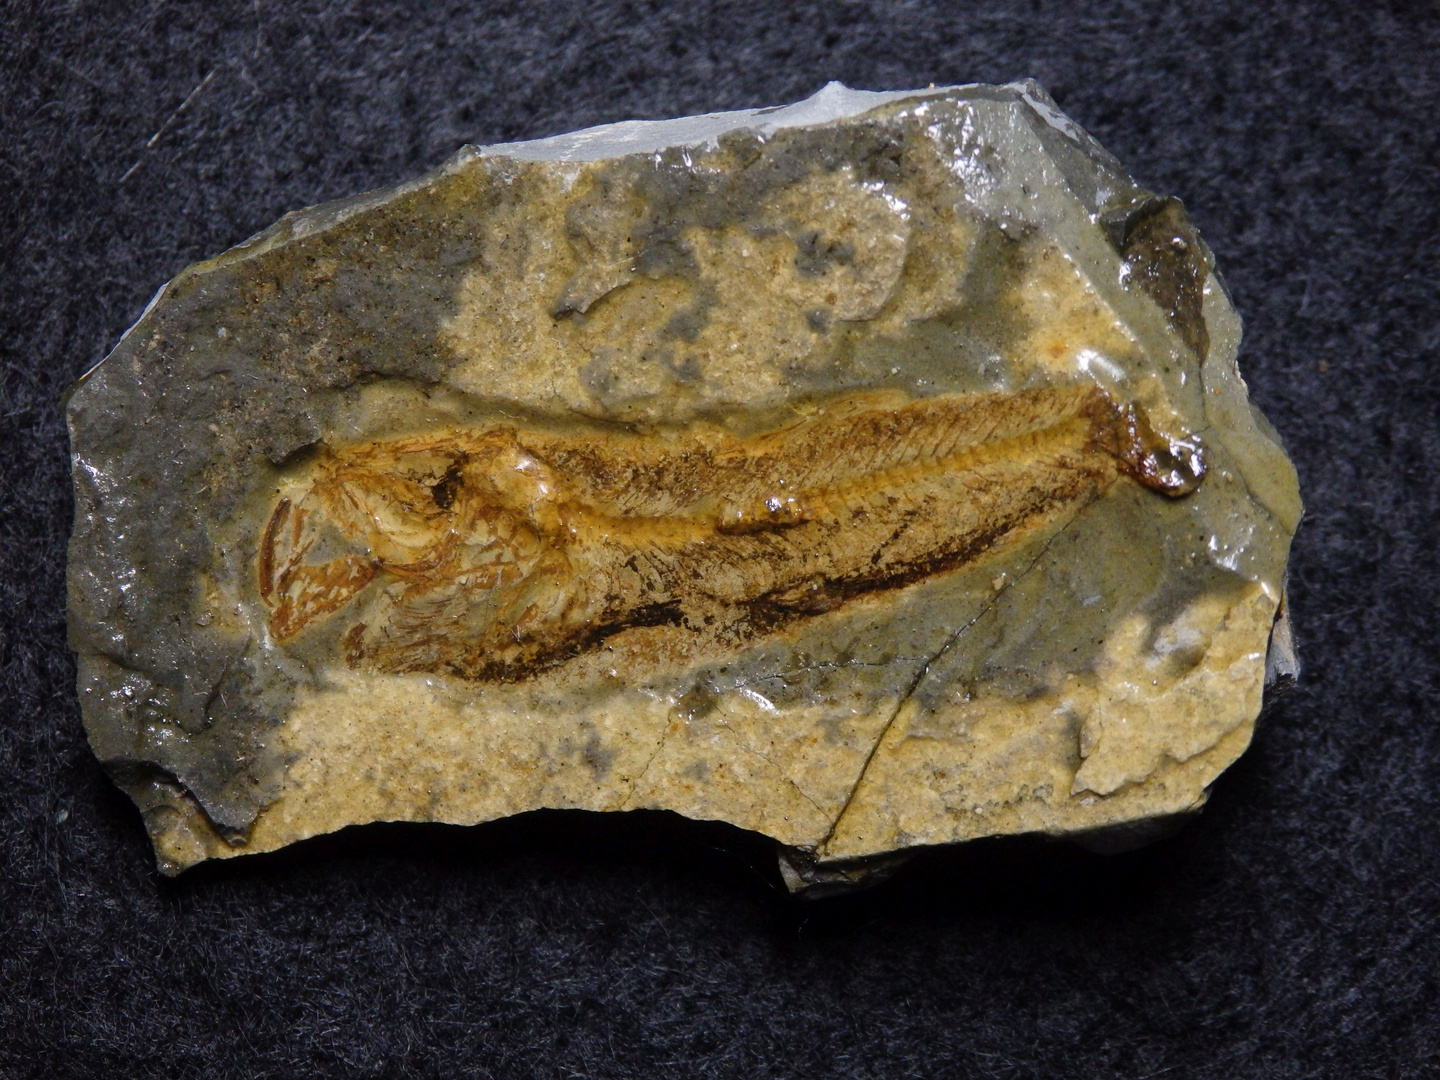 Fossiler Fisch aus der Kreidezeit - Sardinoides